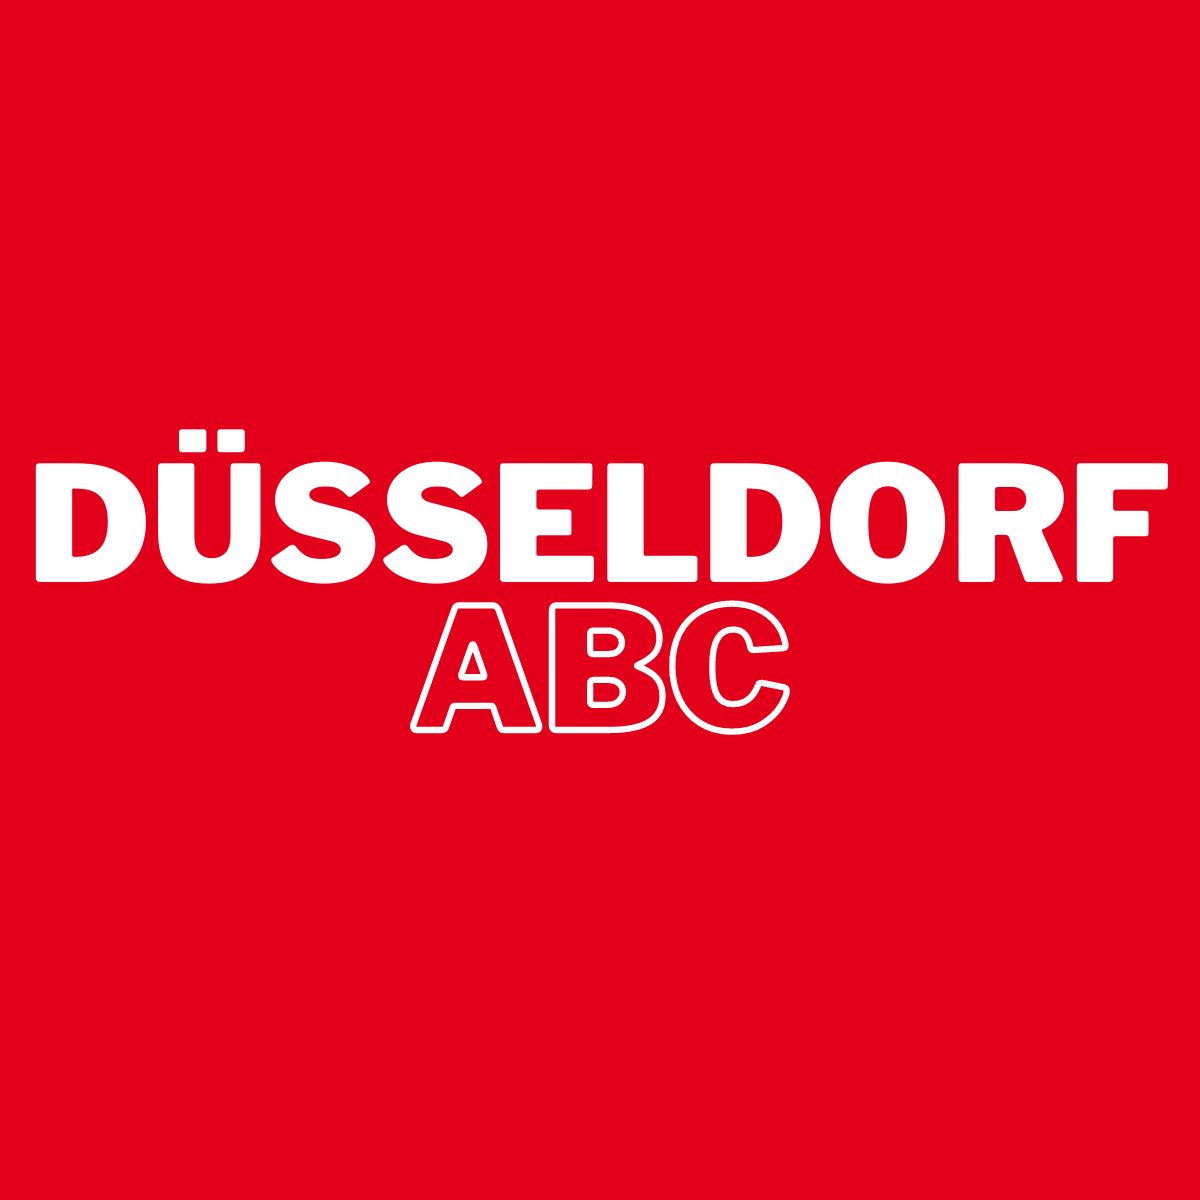 Wir starten das Düsseldorf ABC